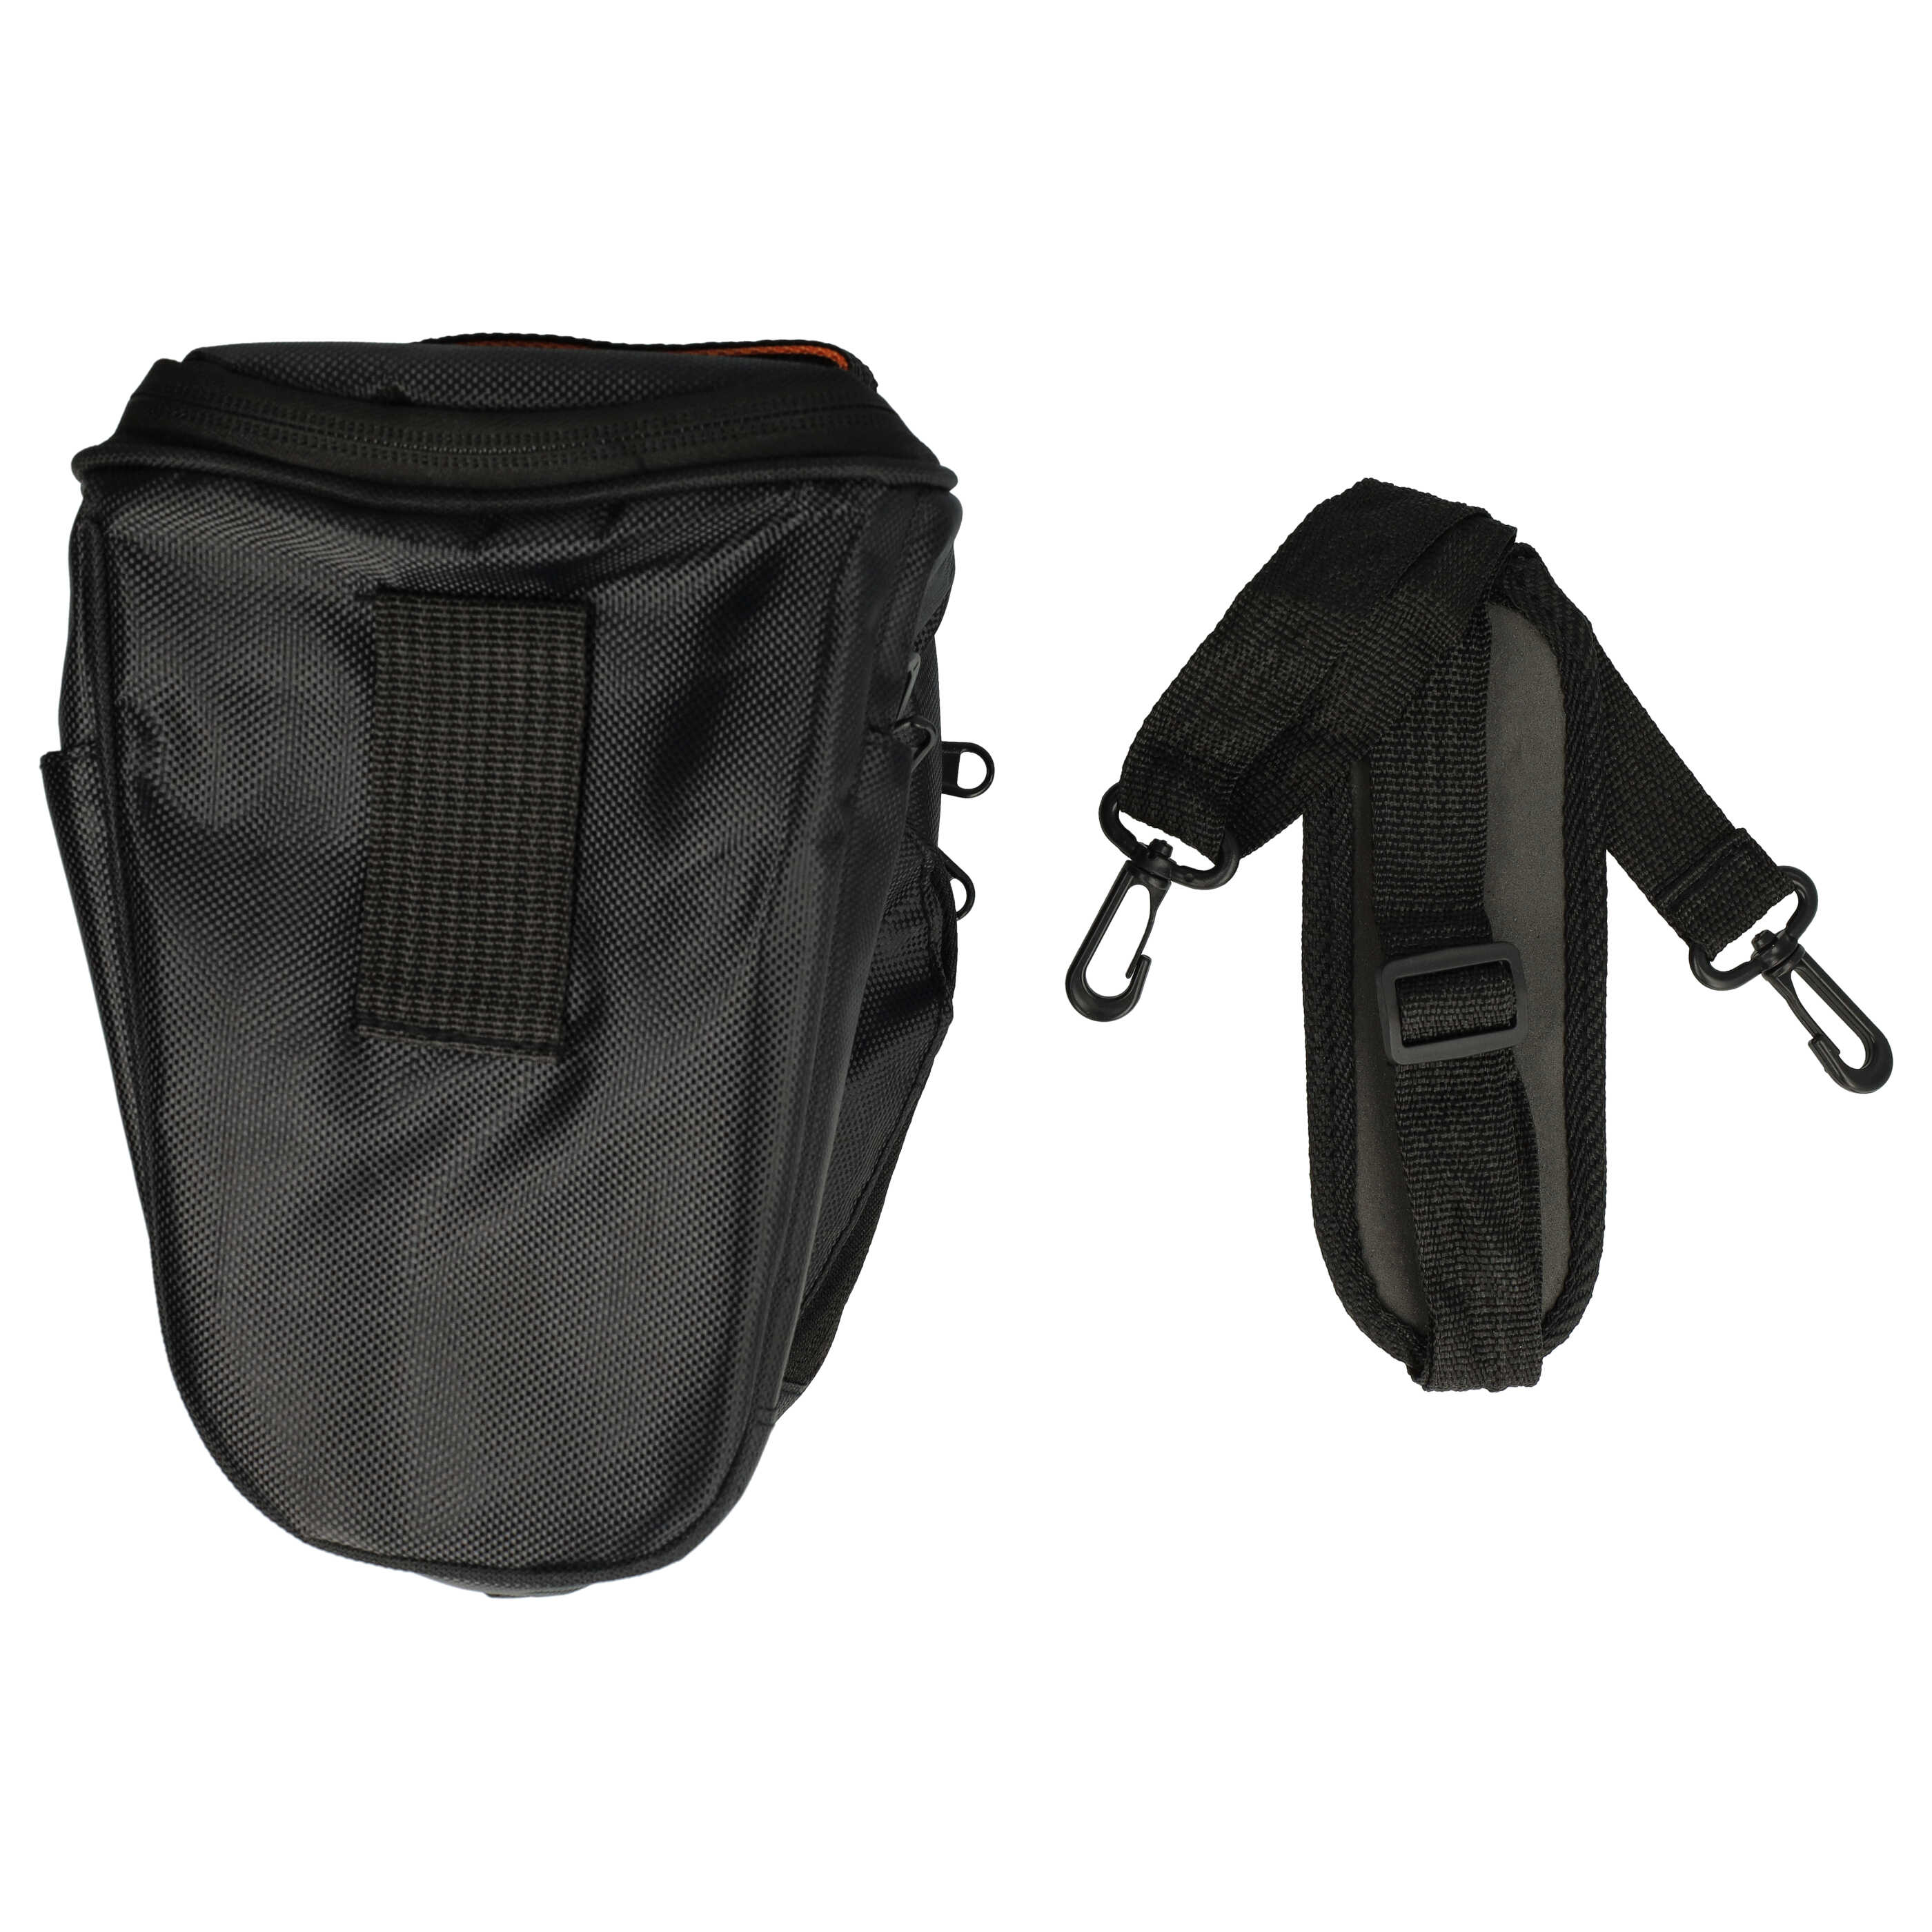 Tasche passend für Pentax Kamera u.a. - Schwarz, Inkl. Schultergurt, Mit Gürtelschlaufe